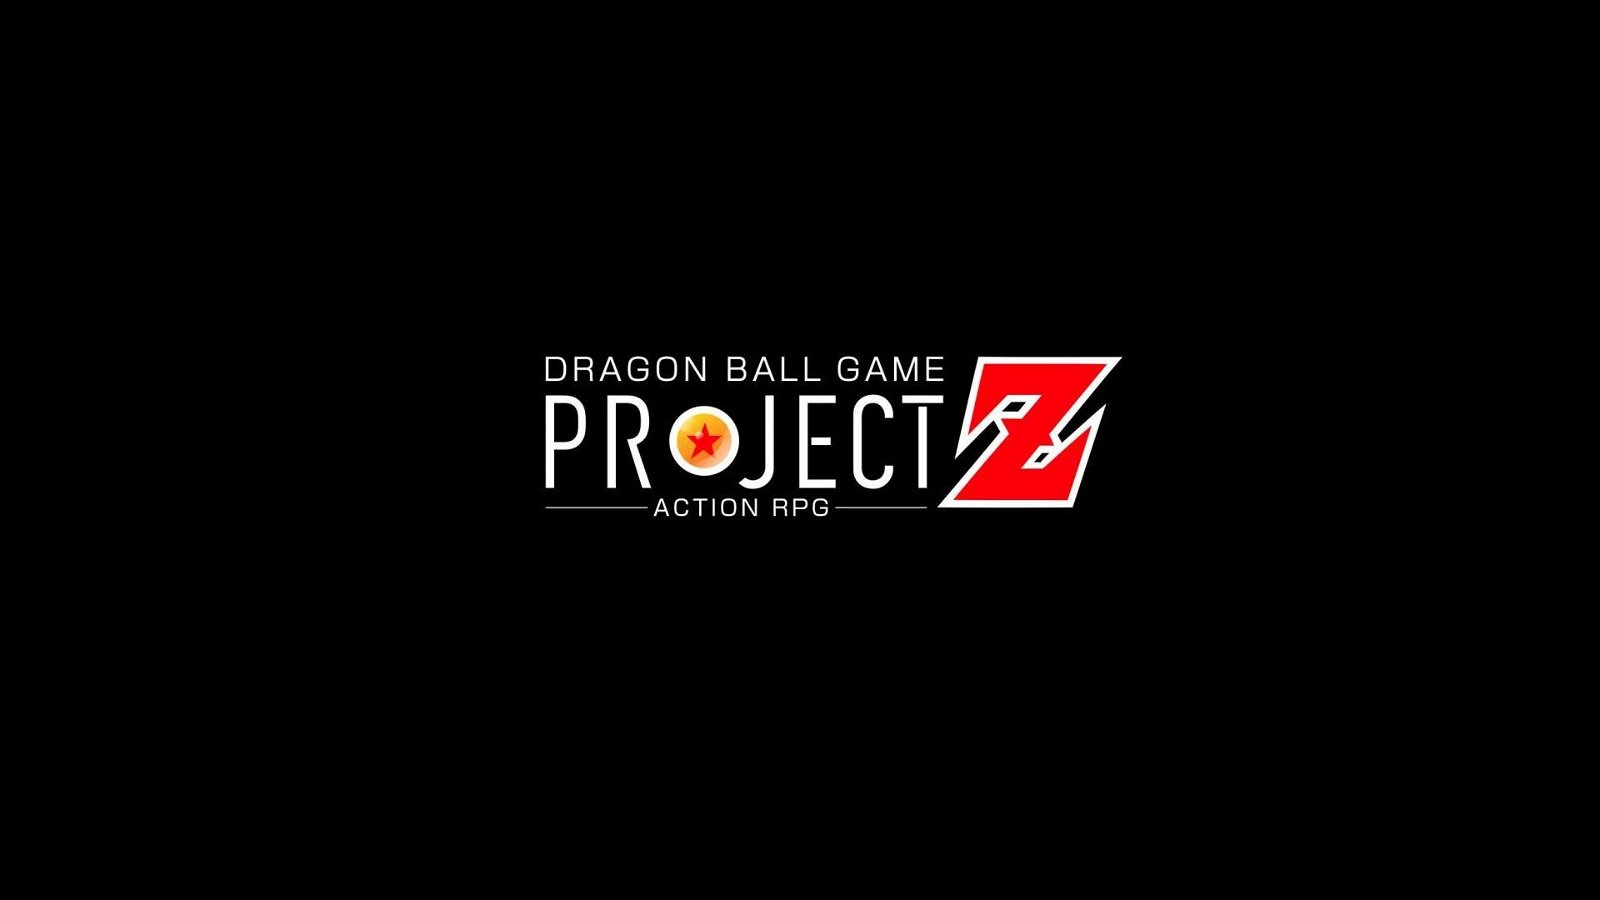 Immagine di Dragon Ball Project Z: rivelato il primo trailer per il nuovo action RPG di Bandai Namco